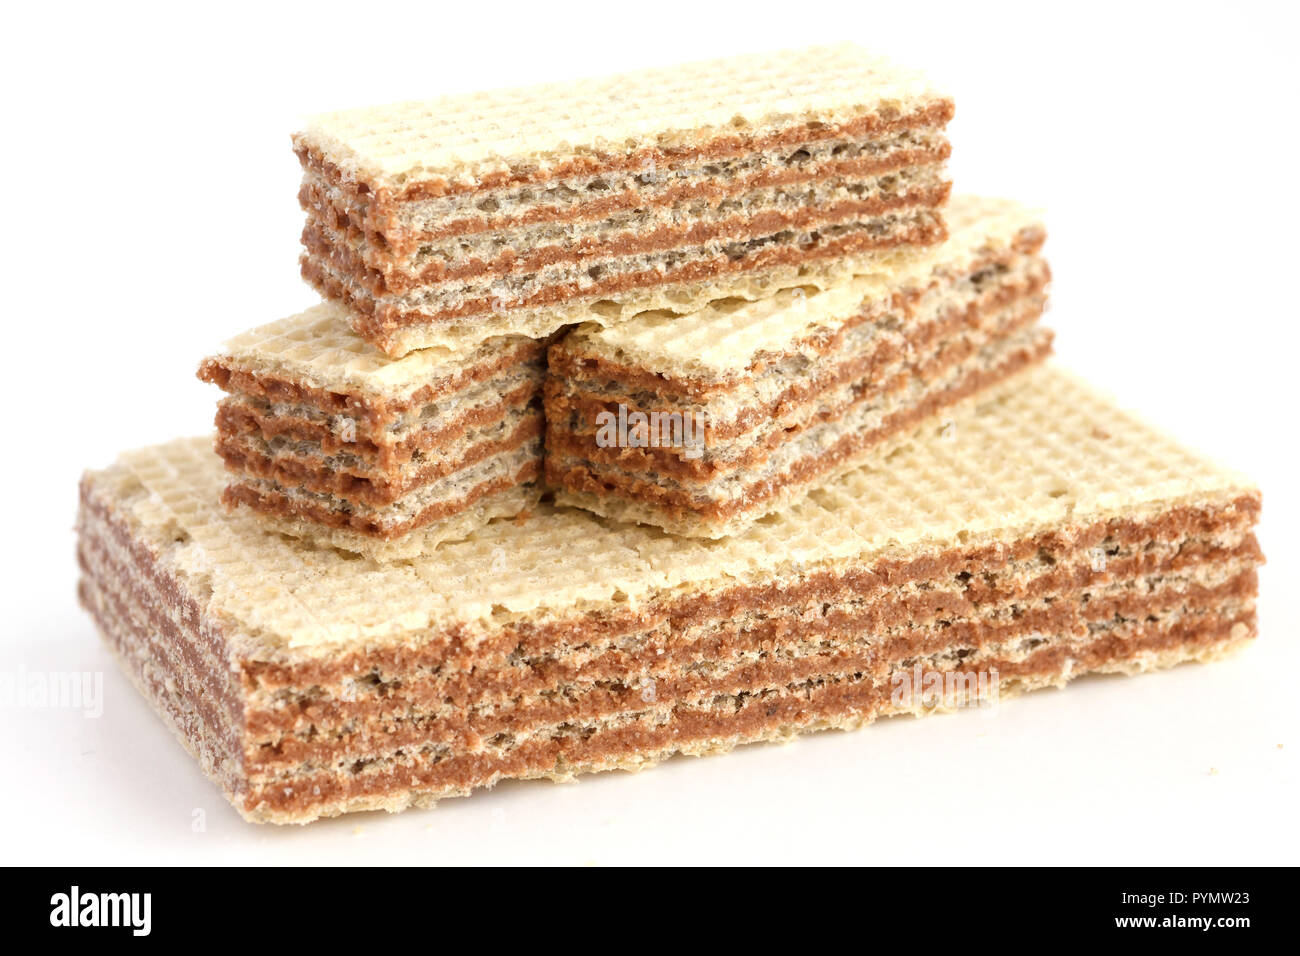 Pila di wafer alla vaniglia biscotti con cioccolato ripieno Foto Stock